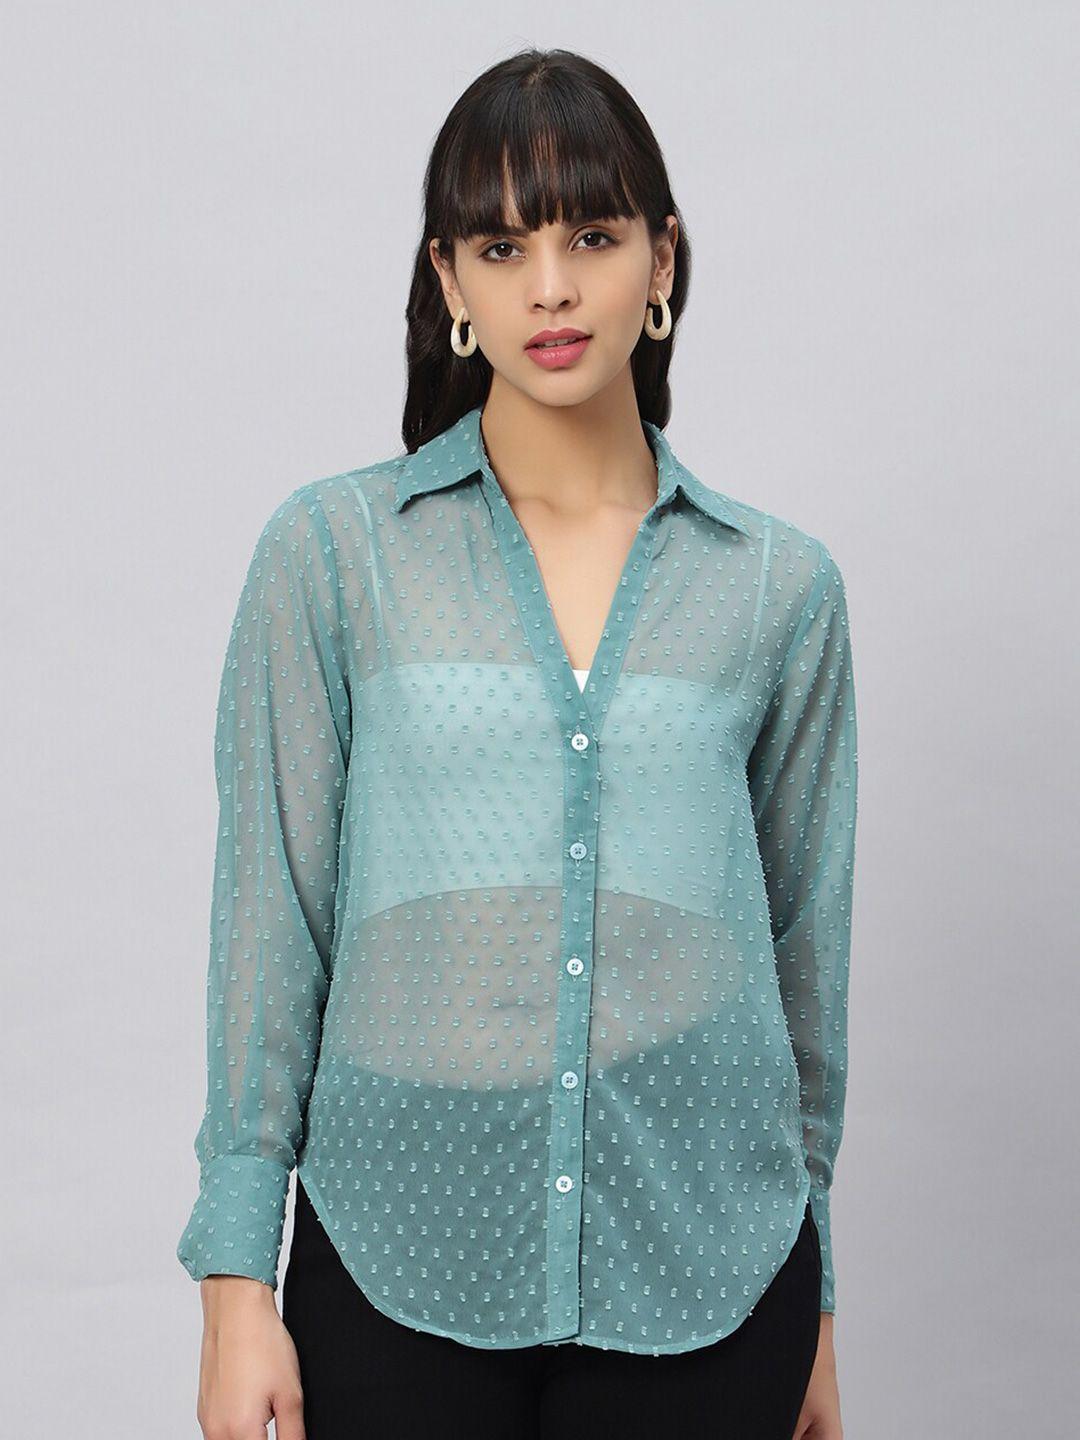 oui comfort self design spread collar oversized casual shirt